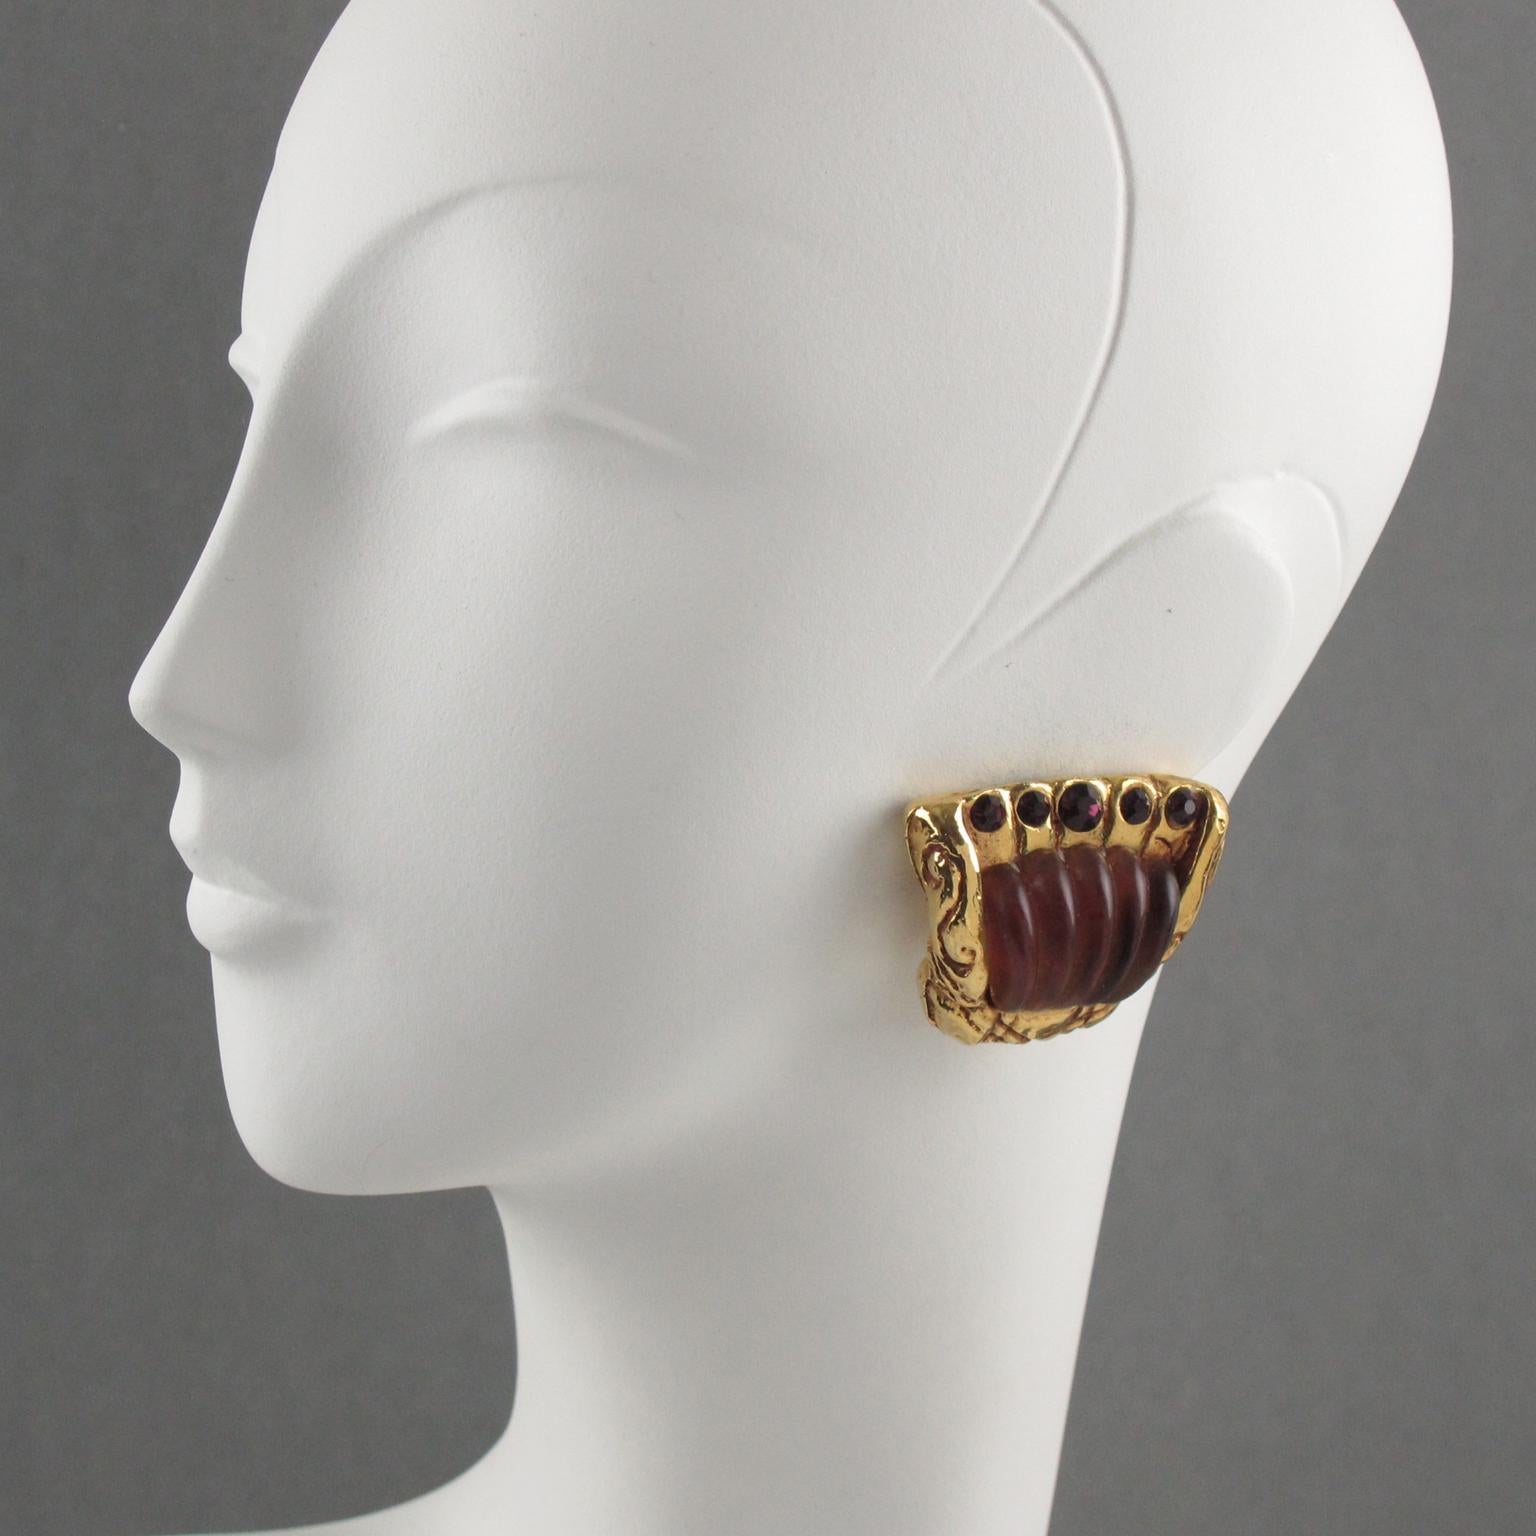 Diese hübschen Kalinger Paris verziert Clip-on Ohrringe verfügen über eine barocke Harz mit einem vergoldeten Metall-Beschichtung Fan Form, gekrönt mit einem riesigen lila Traube geschnitzt Harz-förmigen Cabochon und ergänzt mit lila facettierten